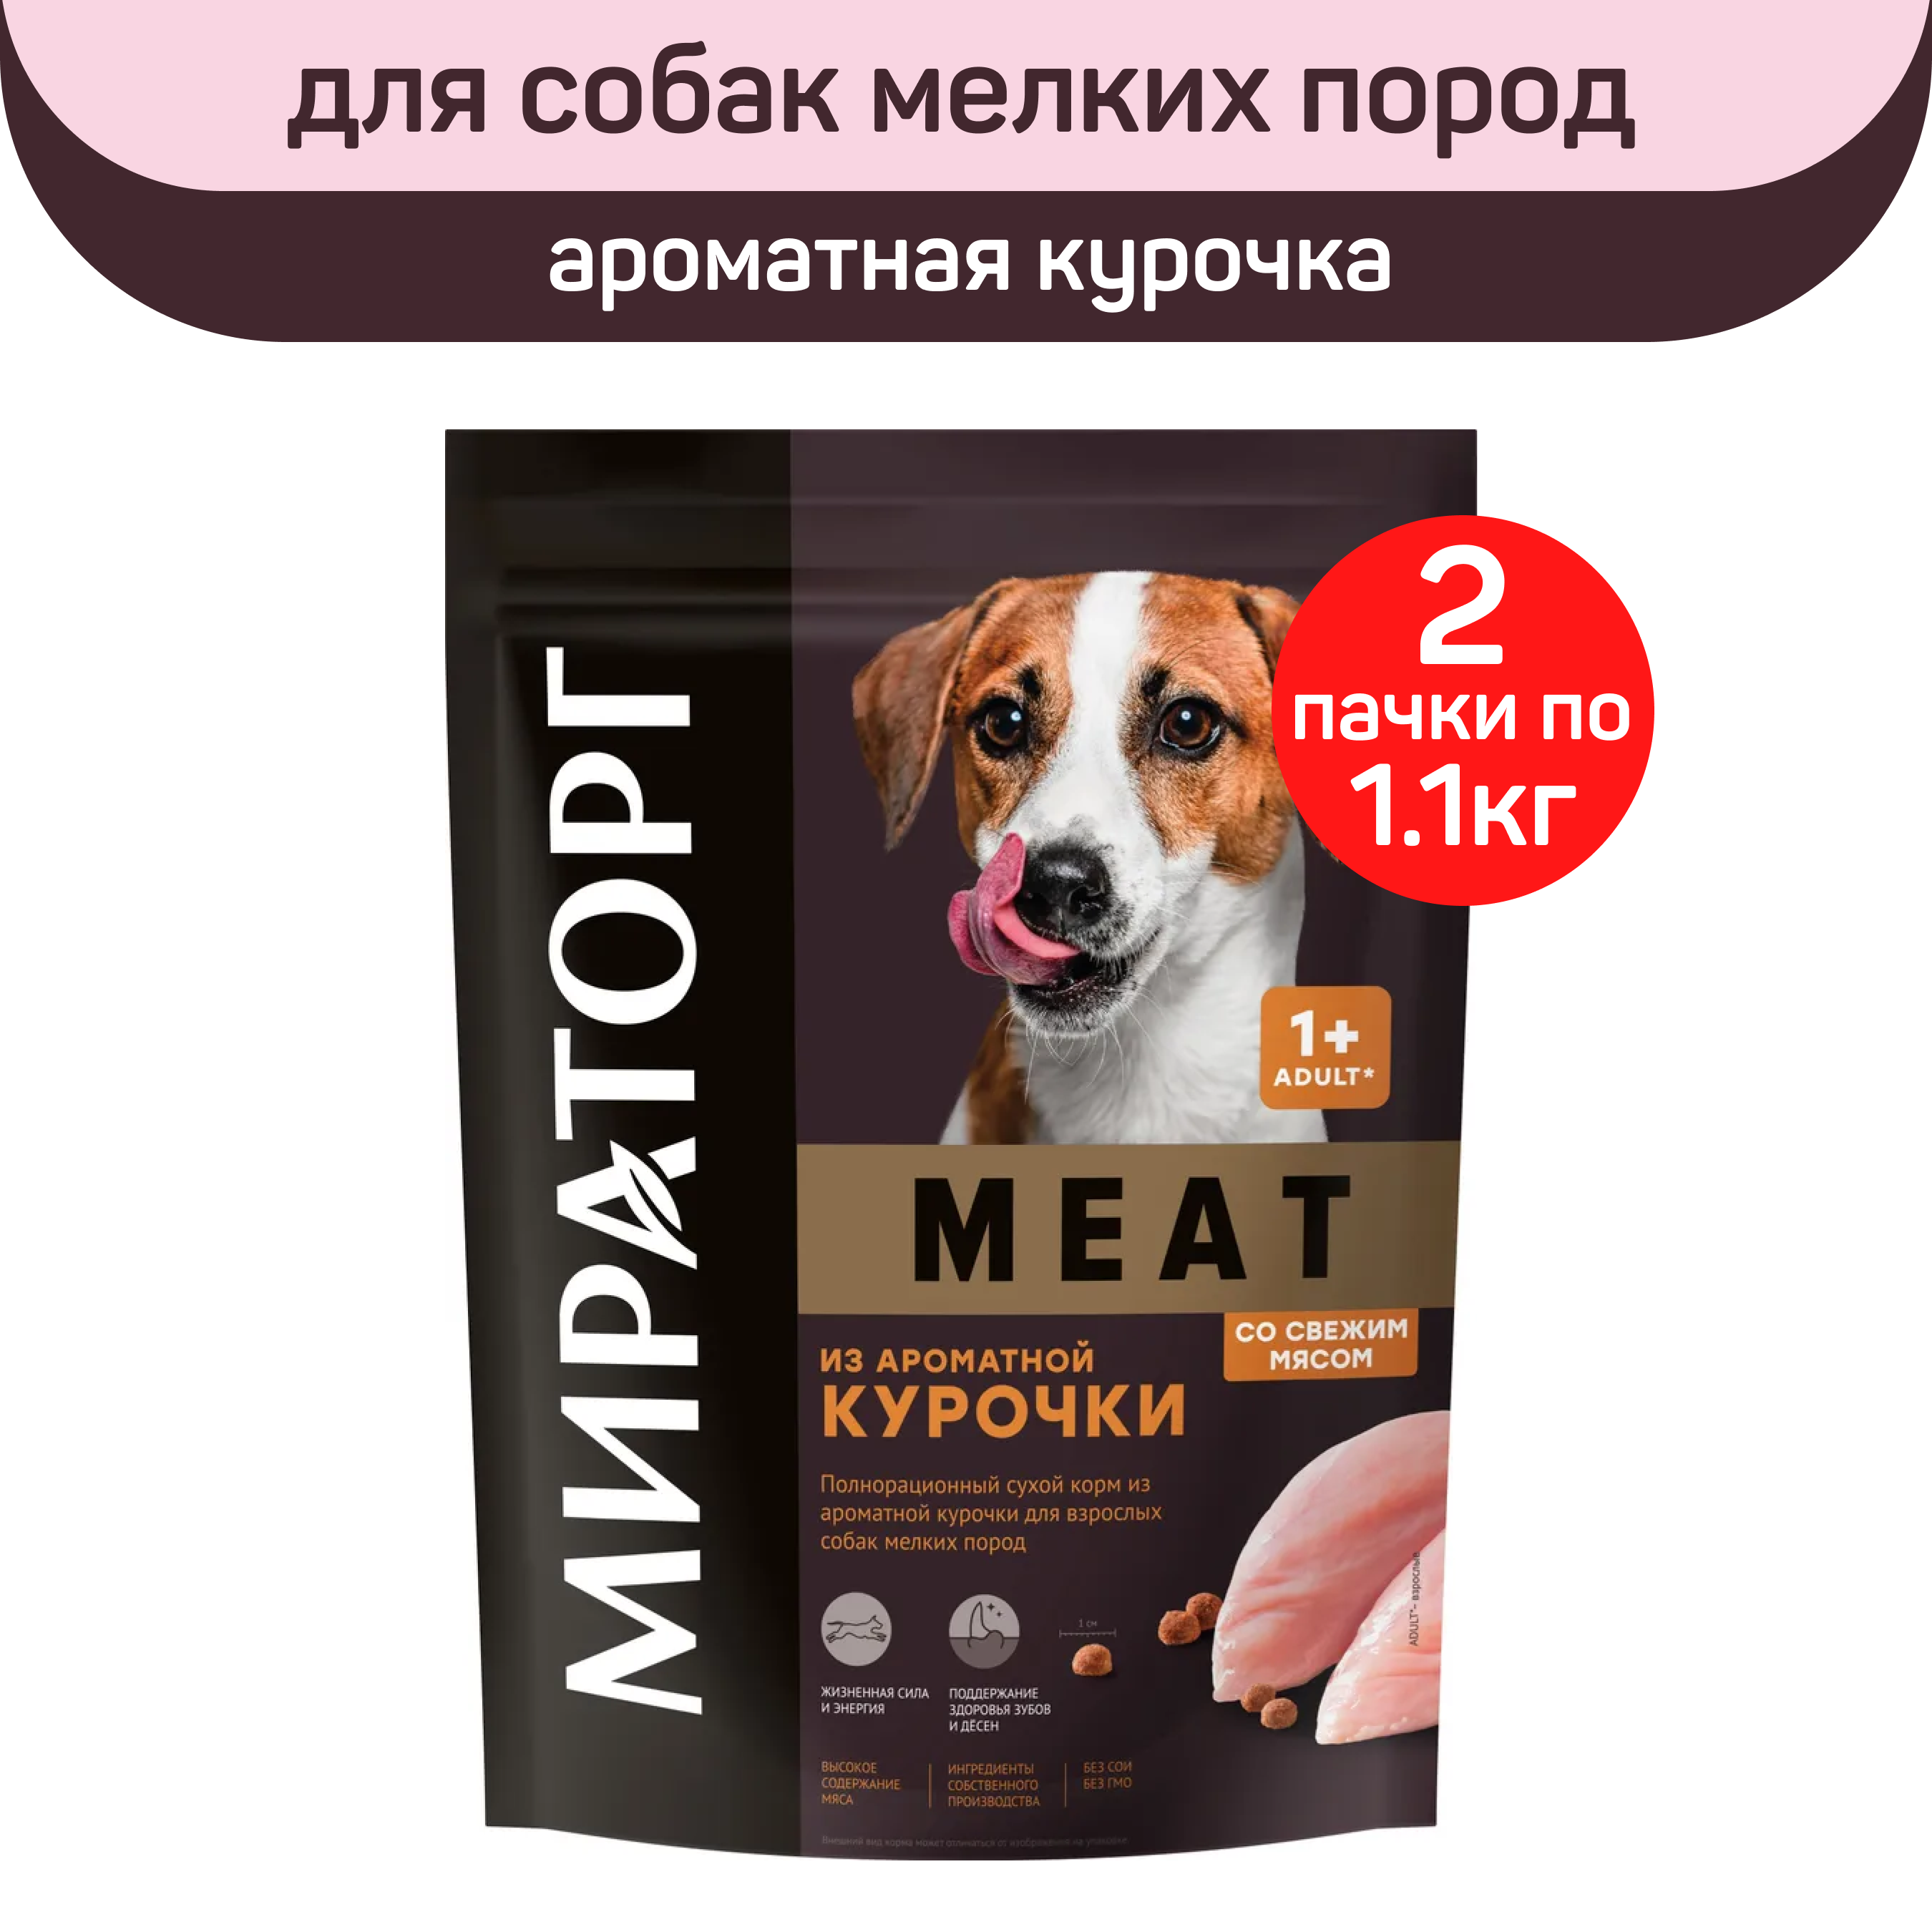 Сухой корм для собак мелких пород Мираторг Meat с курицей, 2 шт по 1,1 кг